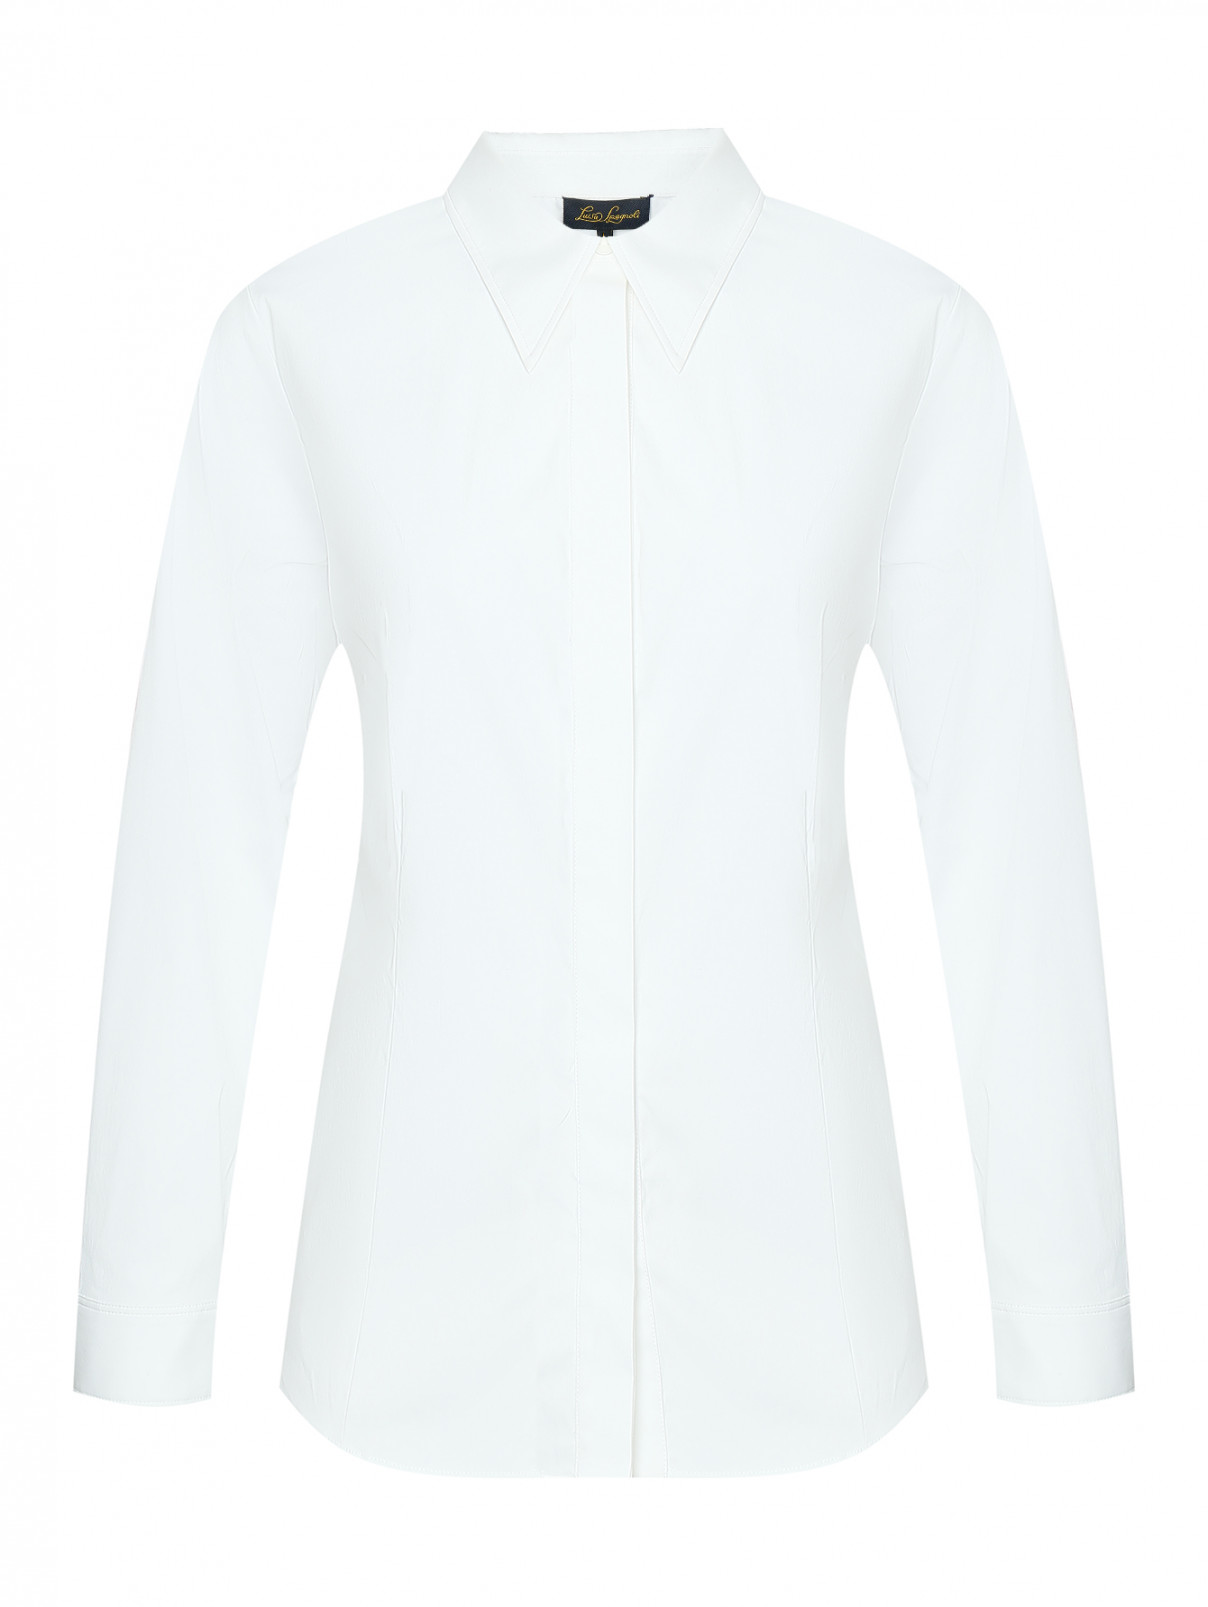 Приталенная классическая рубашка Luisa Spagnoli  –  Общий вид  – Цвет:  Белый